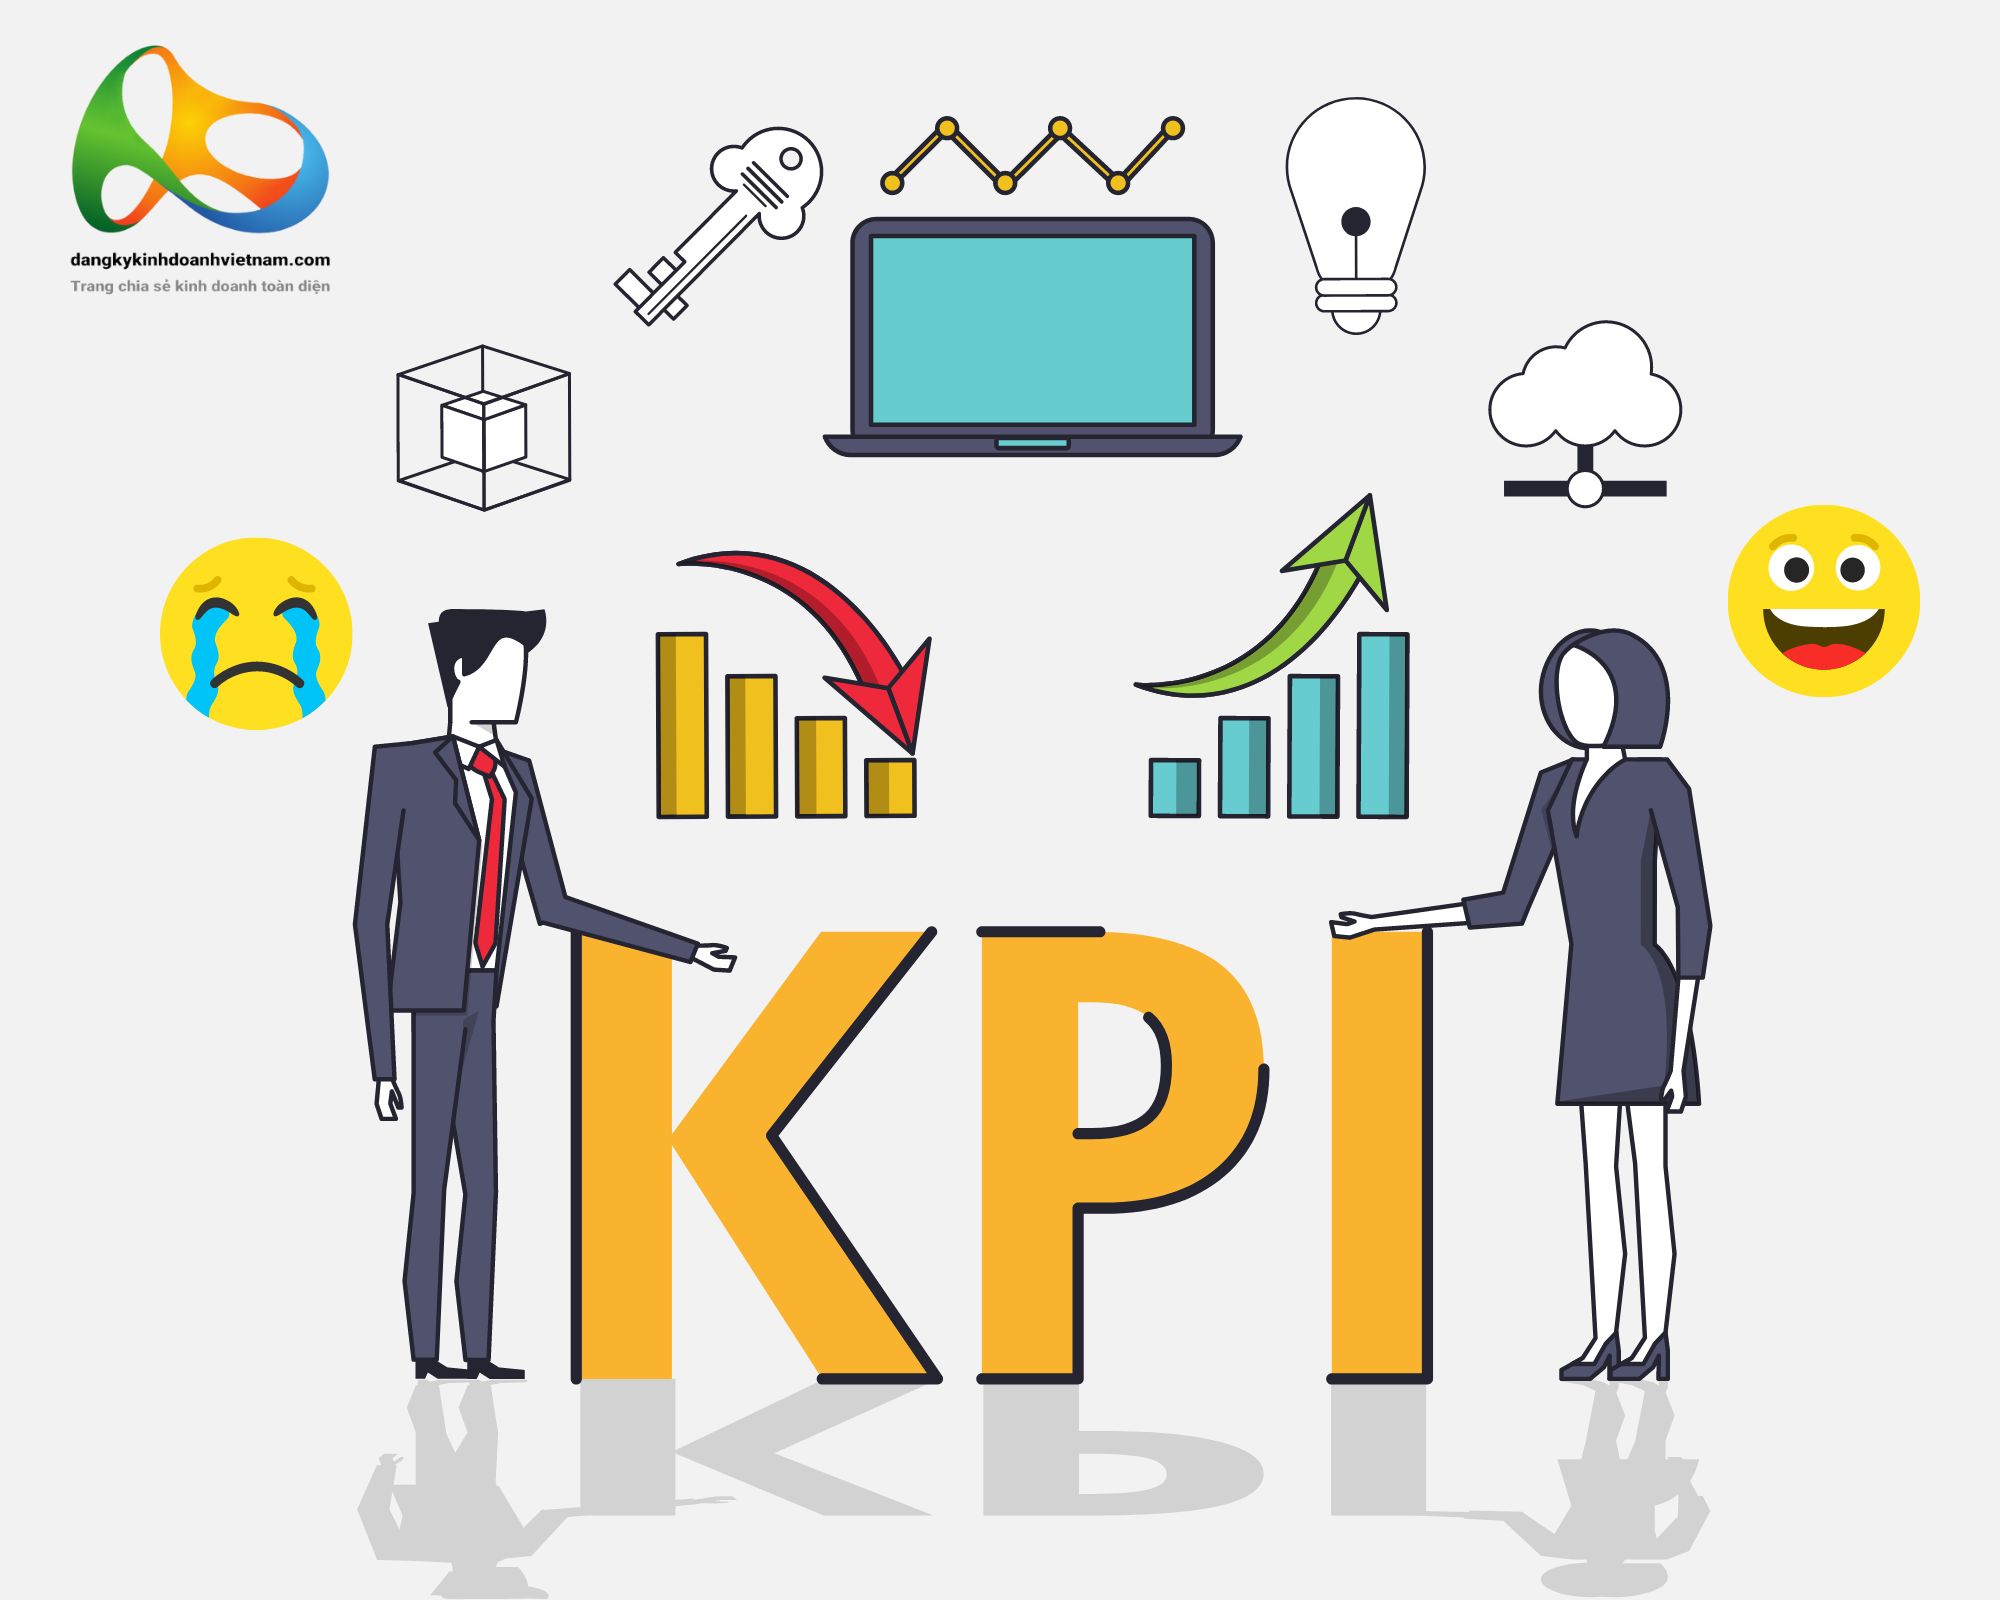  KPI là gì